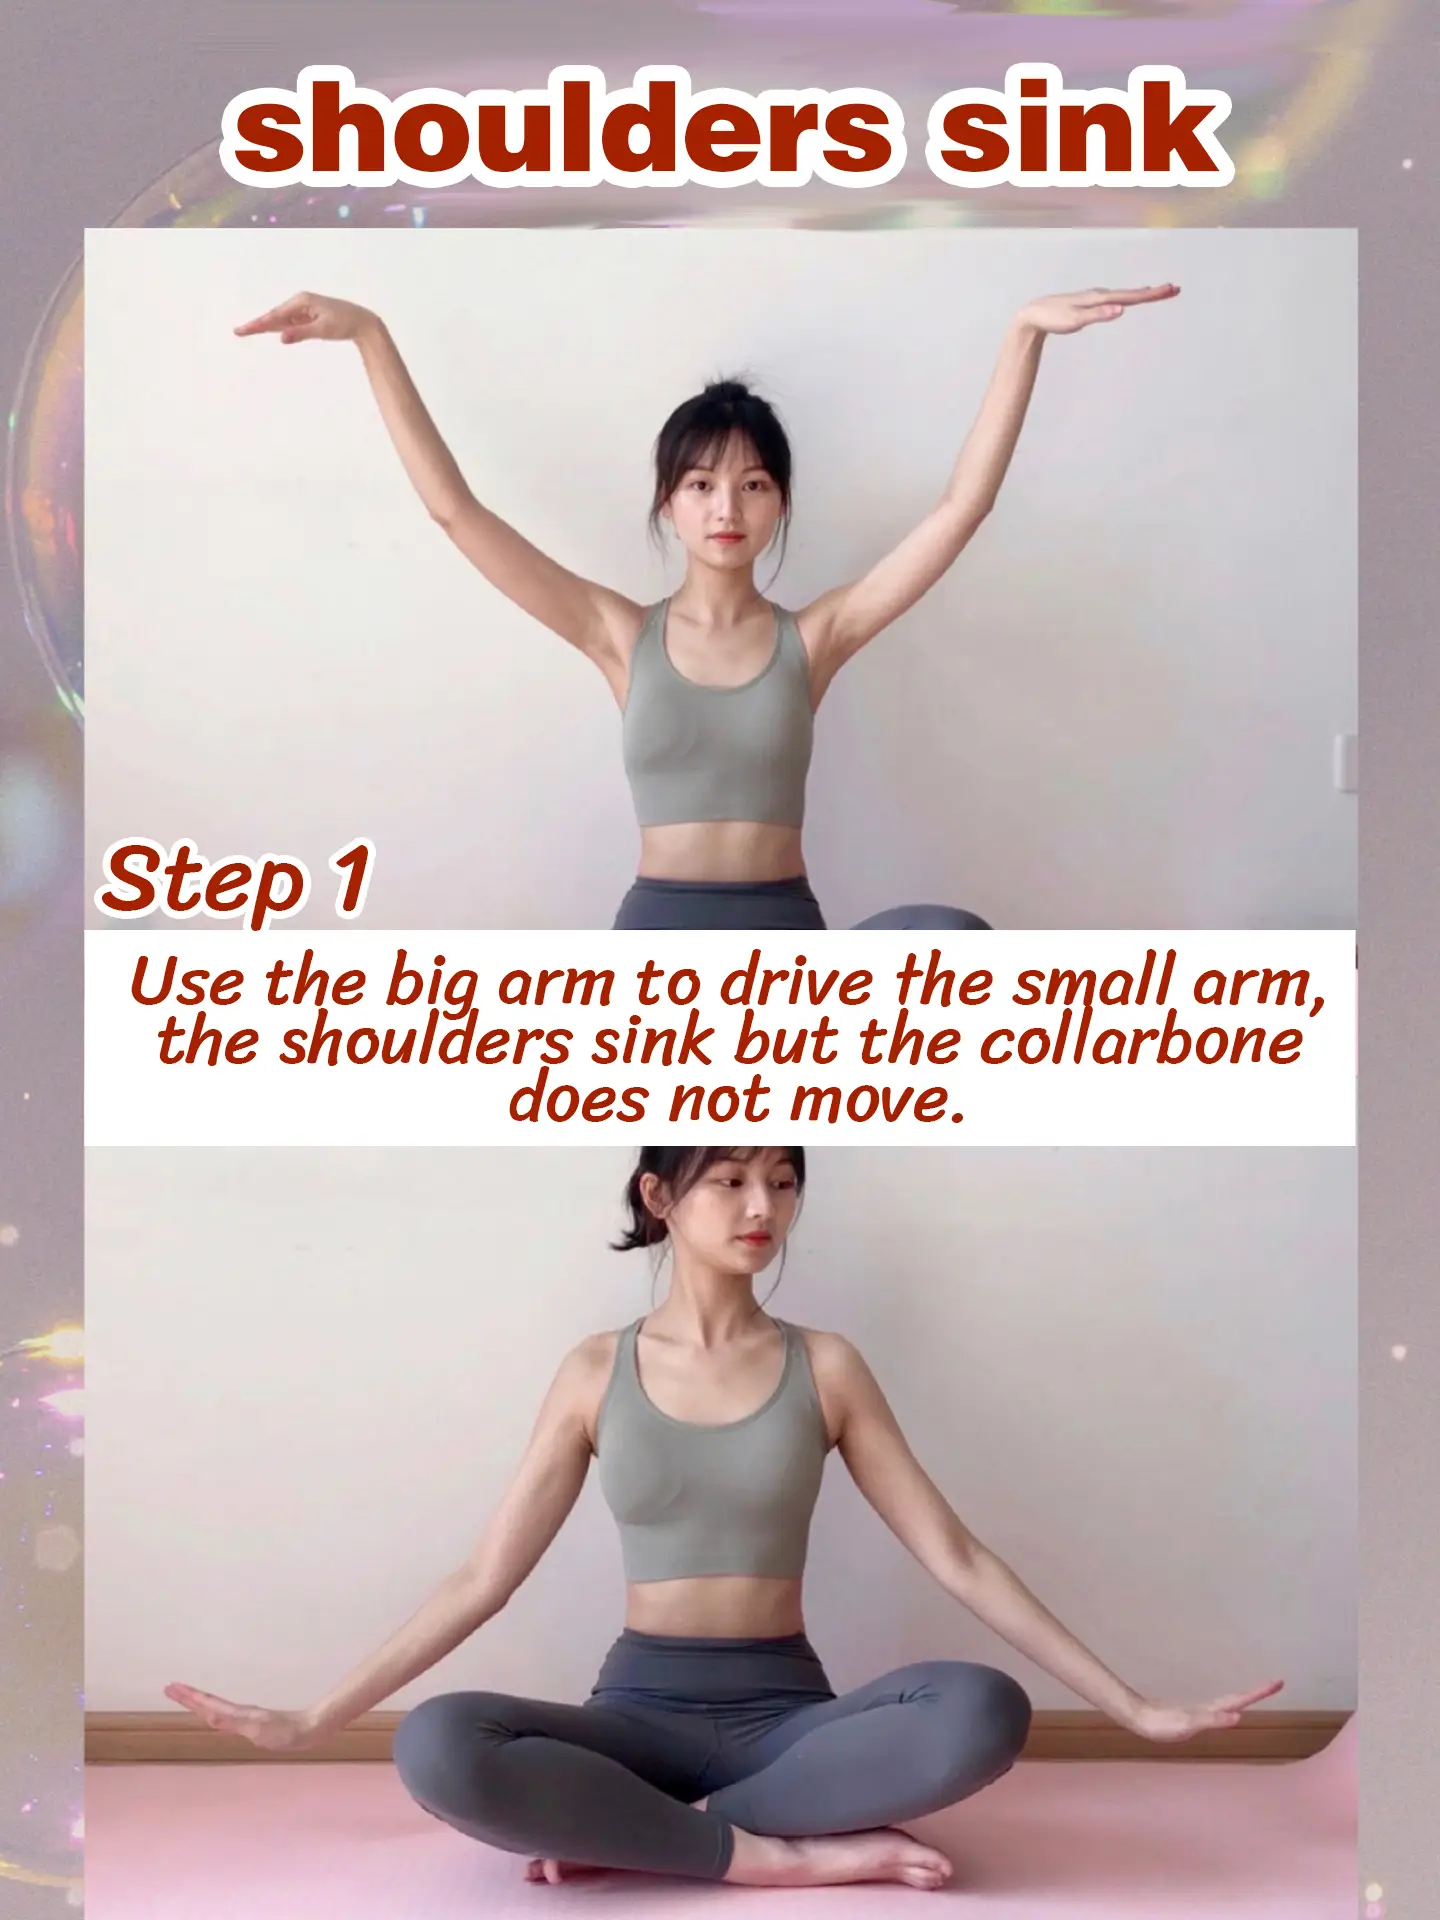 How to Get K-Pop Star 90 Degree Shoulders in a Week Like BlackPink  Back  workout women, Shoulder workout women, Shoulder workout at home